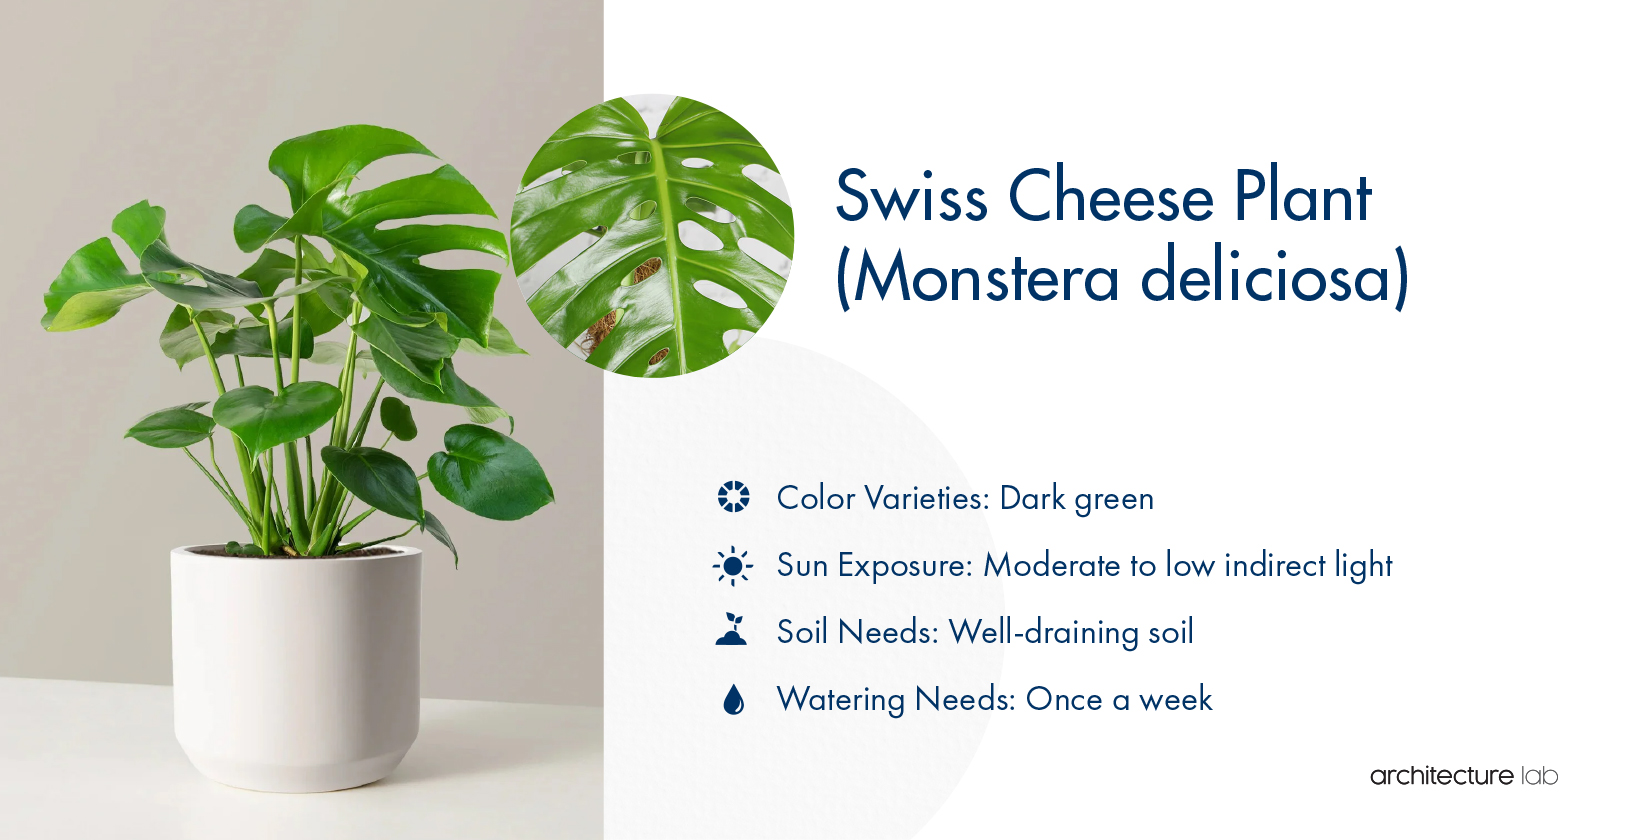 28. Swiss cheese plant (monstera deliciosa)